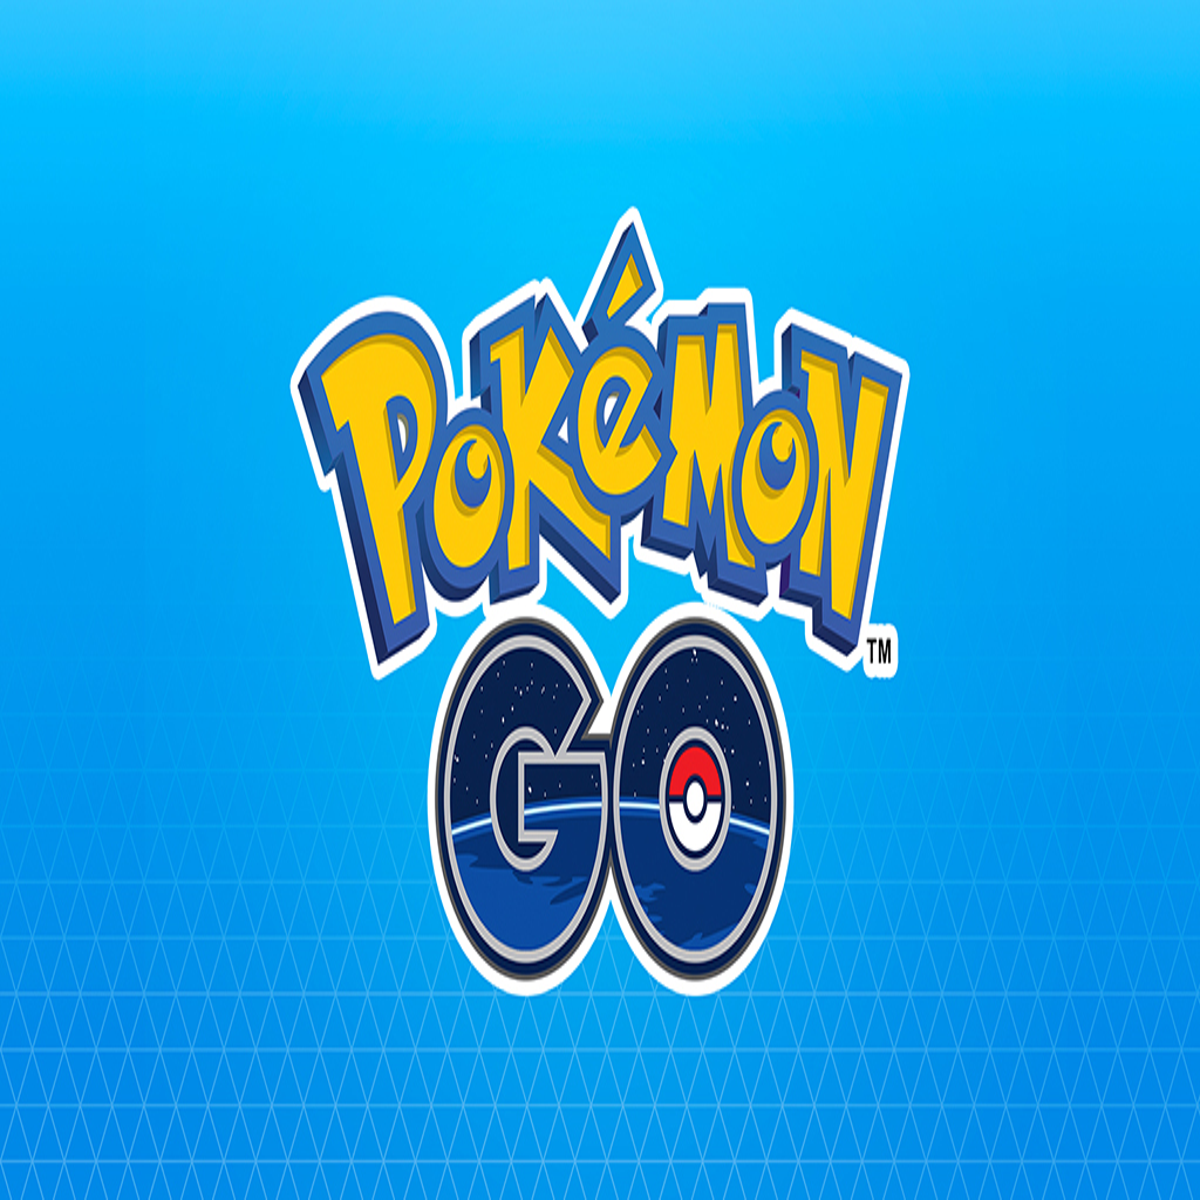 Pokemon Go New Promo Code, Pokemon Go Free 100 Pokecoins Promo Code